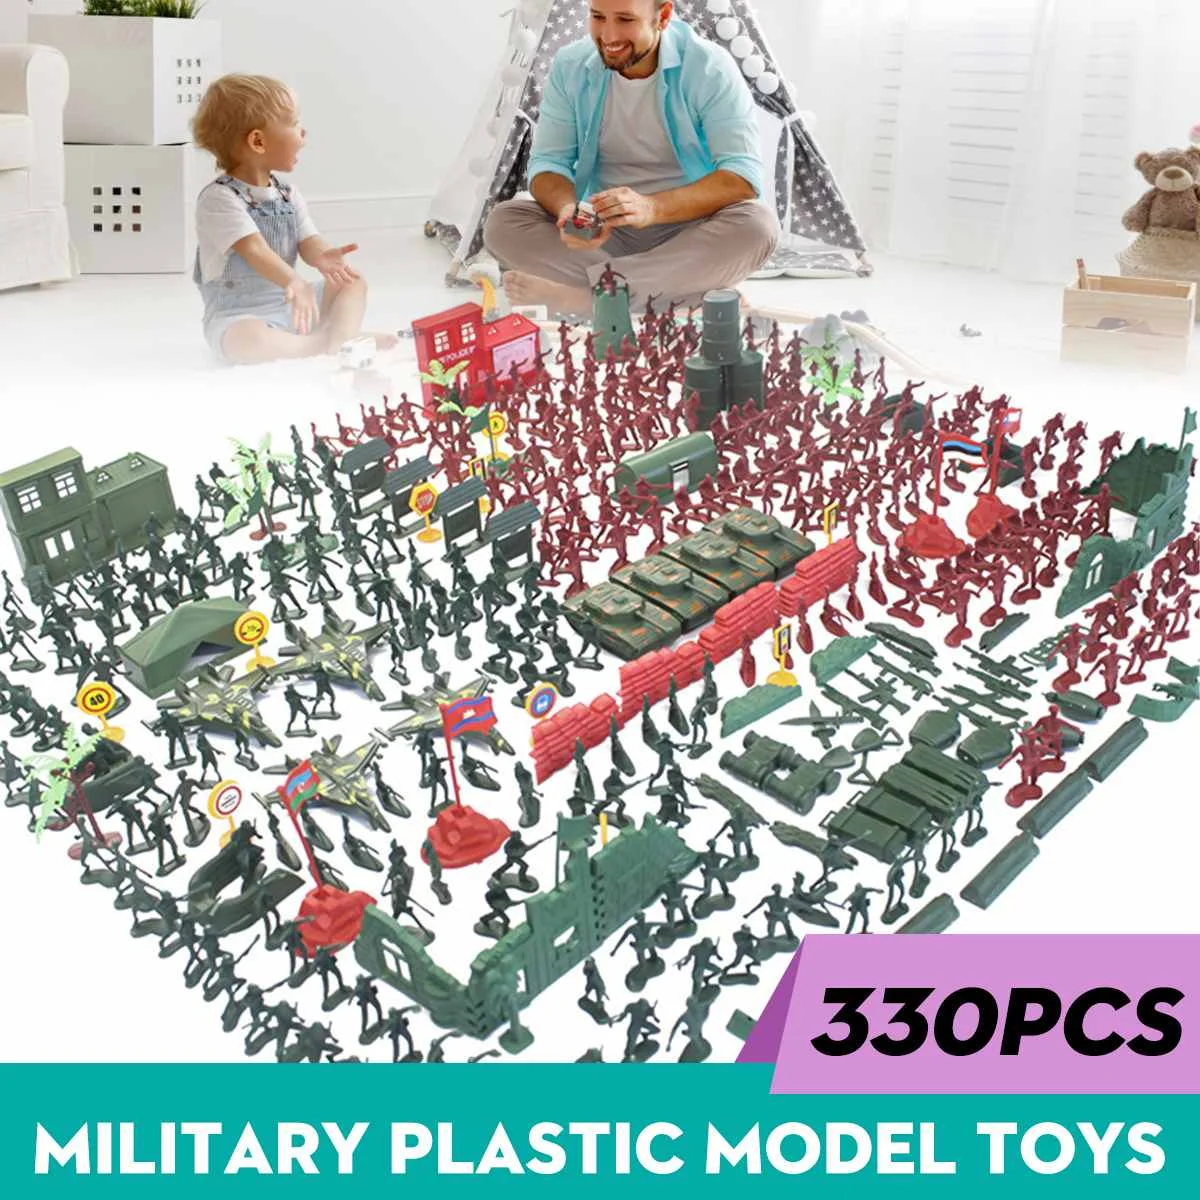 

290 шт./330 шт./компл. Военная пластиковая модель, игрушечный набор, армейские фигурки, аксессуары, декоративные подарочные модели, игрушки, дет...